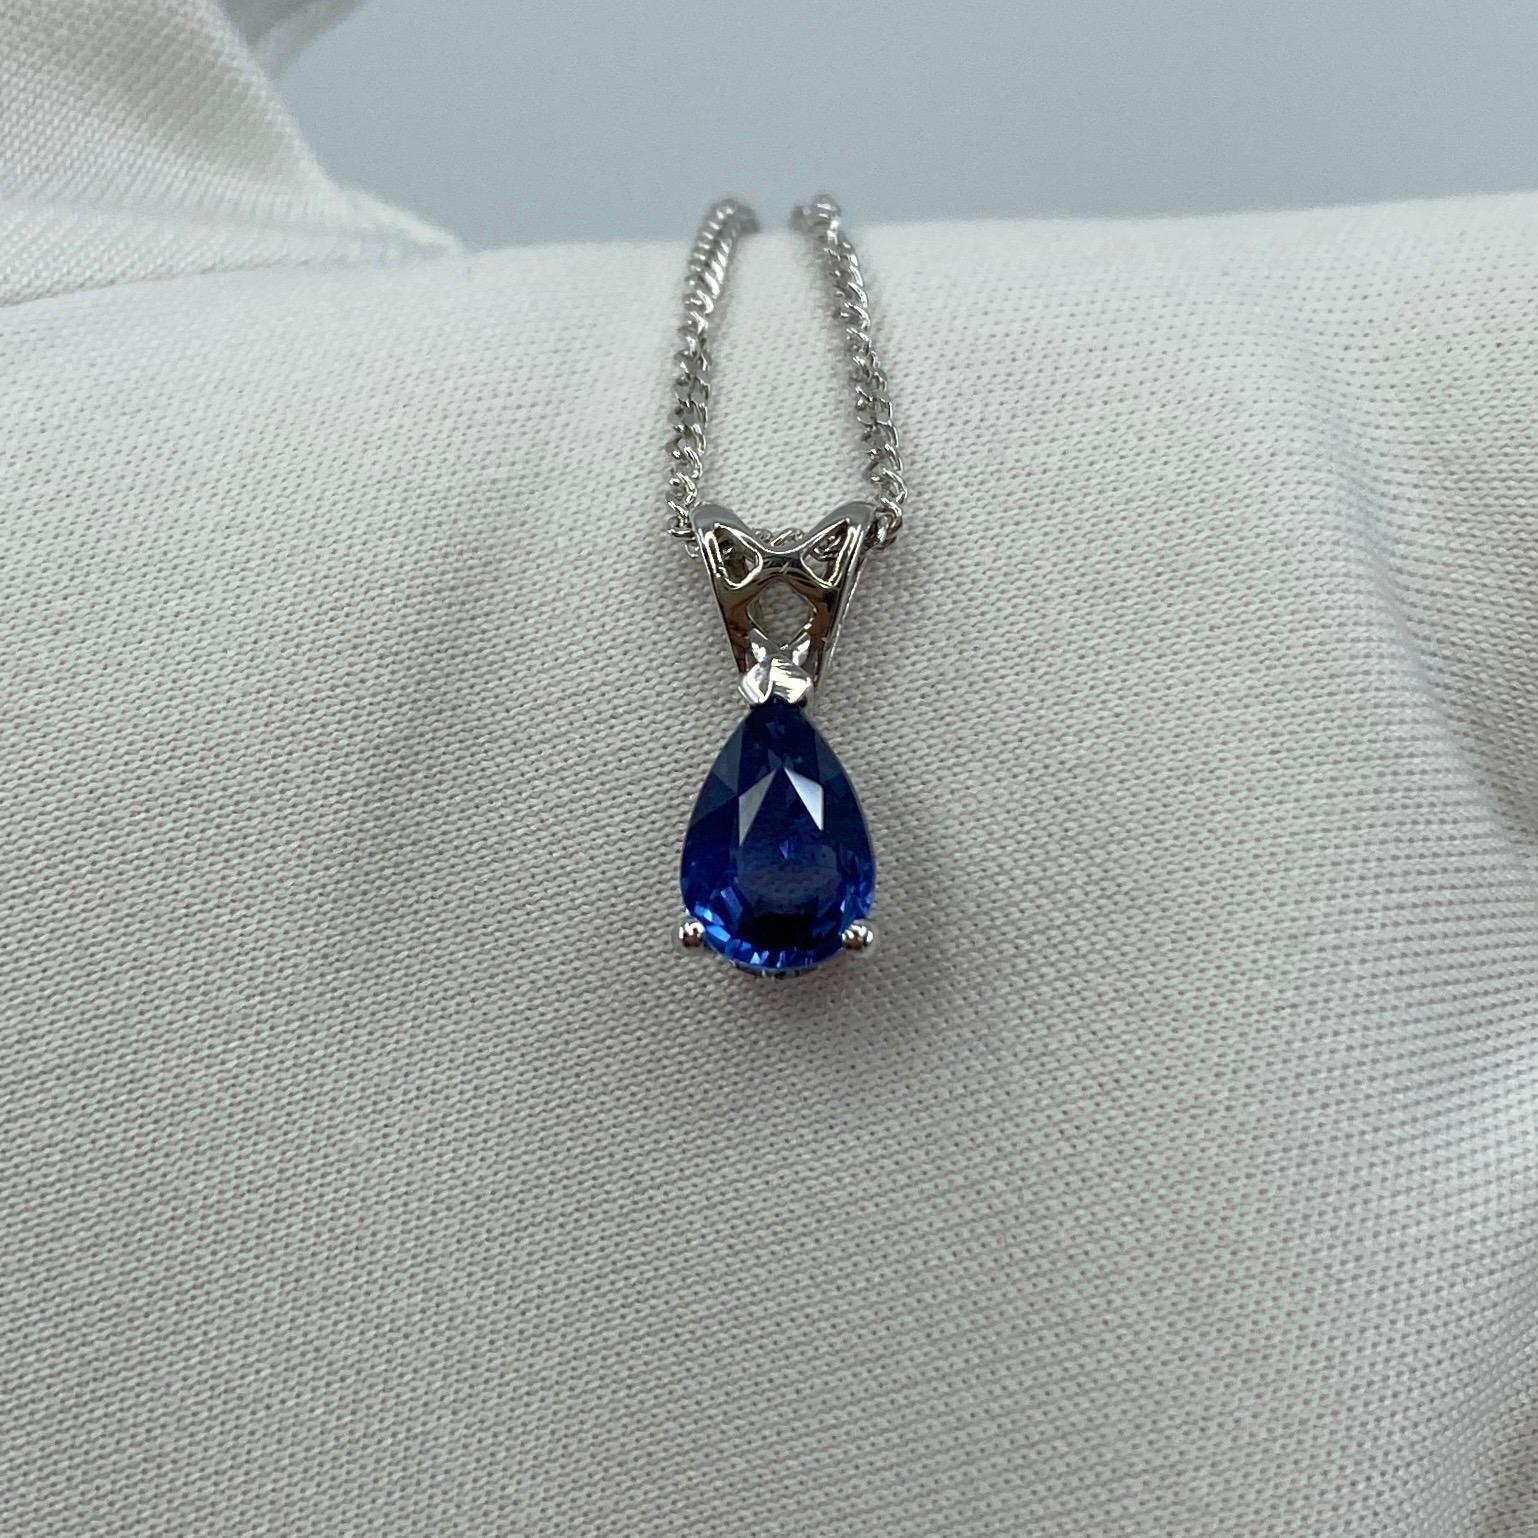 Women's or Men's 1.03ct Vivid Blue Ceylon Sapphire 18k White Gold Pear Cut Heart Pendant Necklace